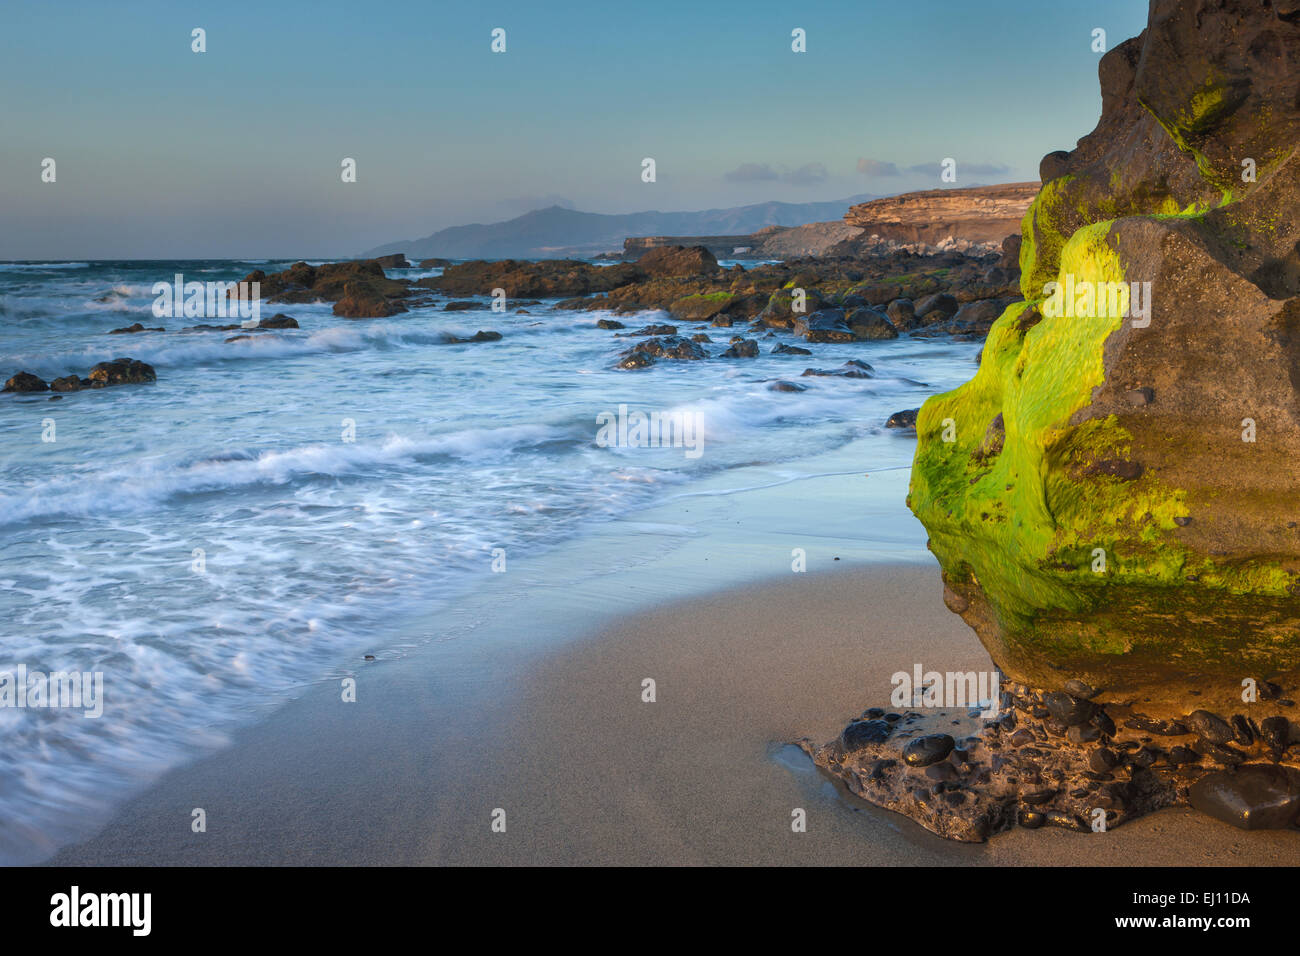 La playa de El Cotillo, España, Europa, Fuerteventura, Islas Canarias, la costa del mar, rock, Cliff, algas Foto de stock